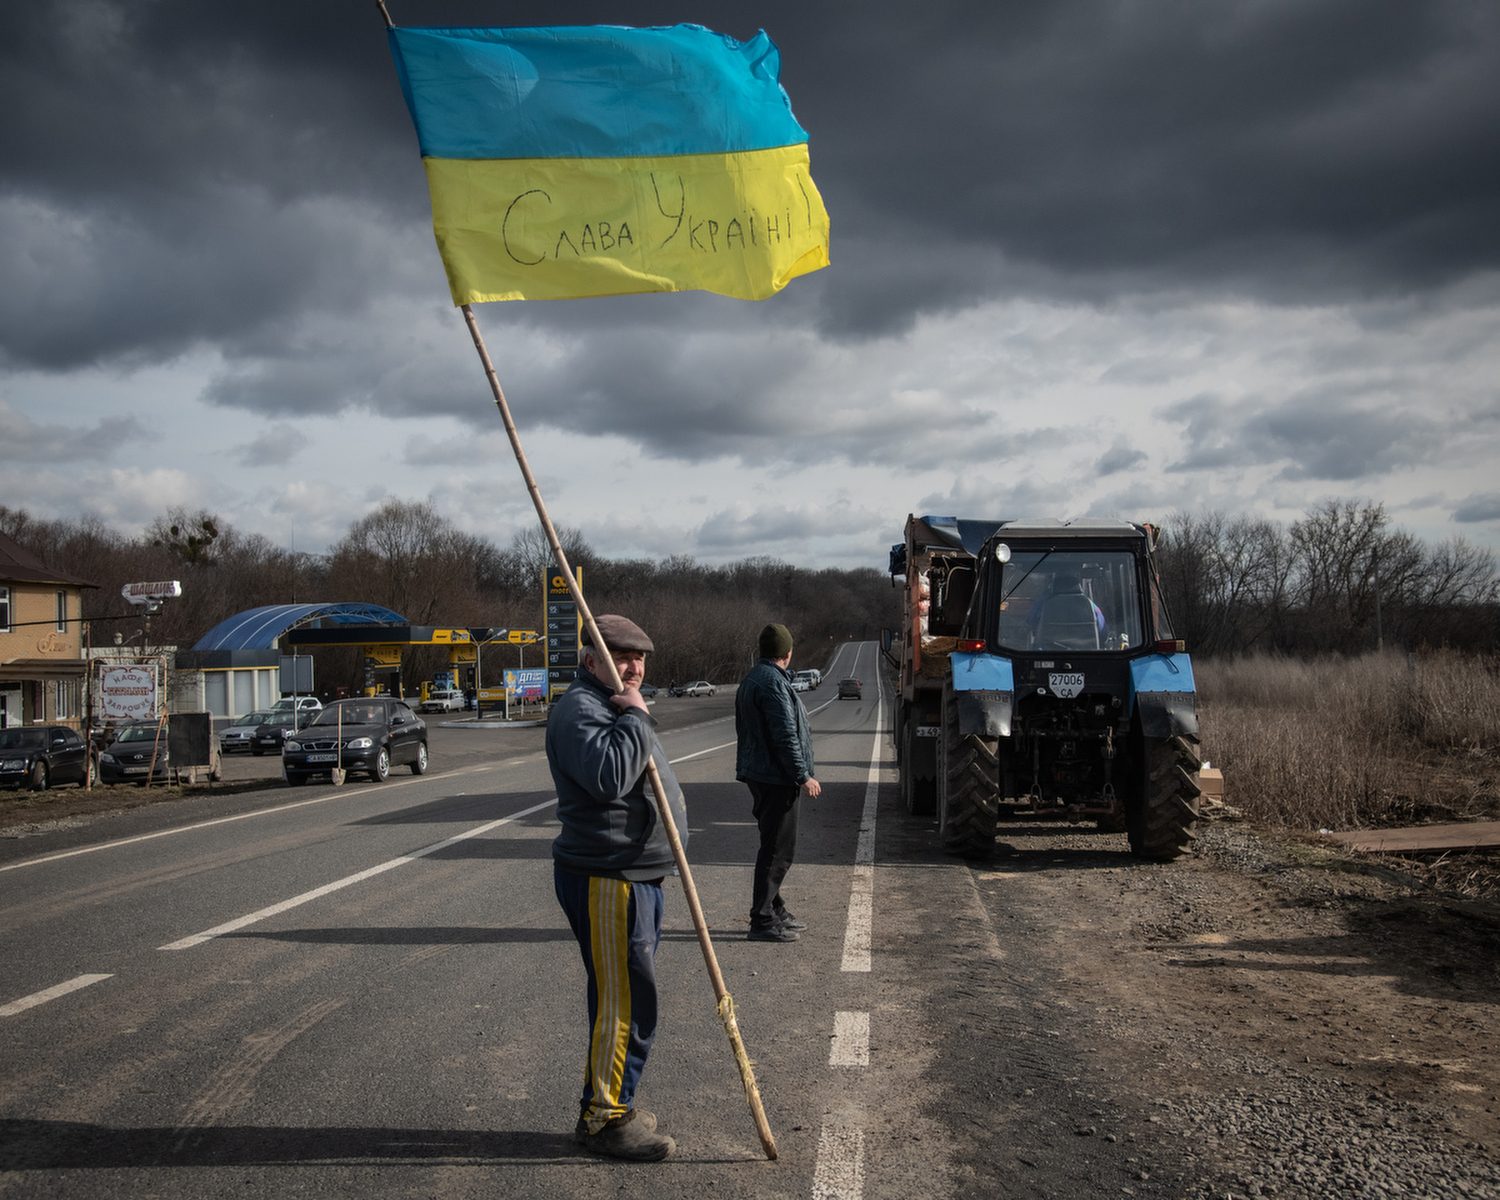 <a href="https://www.mapsimages.com/works/ukraine-civilian-resistance-2022/">Ukraine, Civilian Resistance</a>